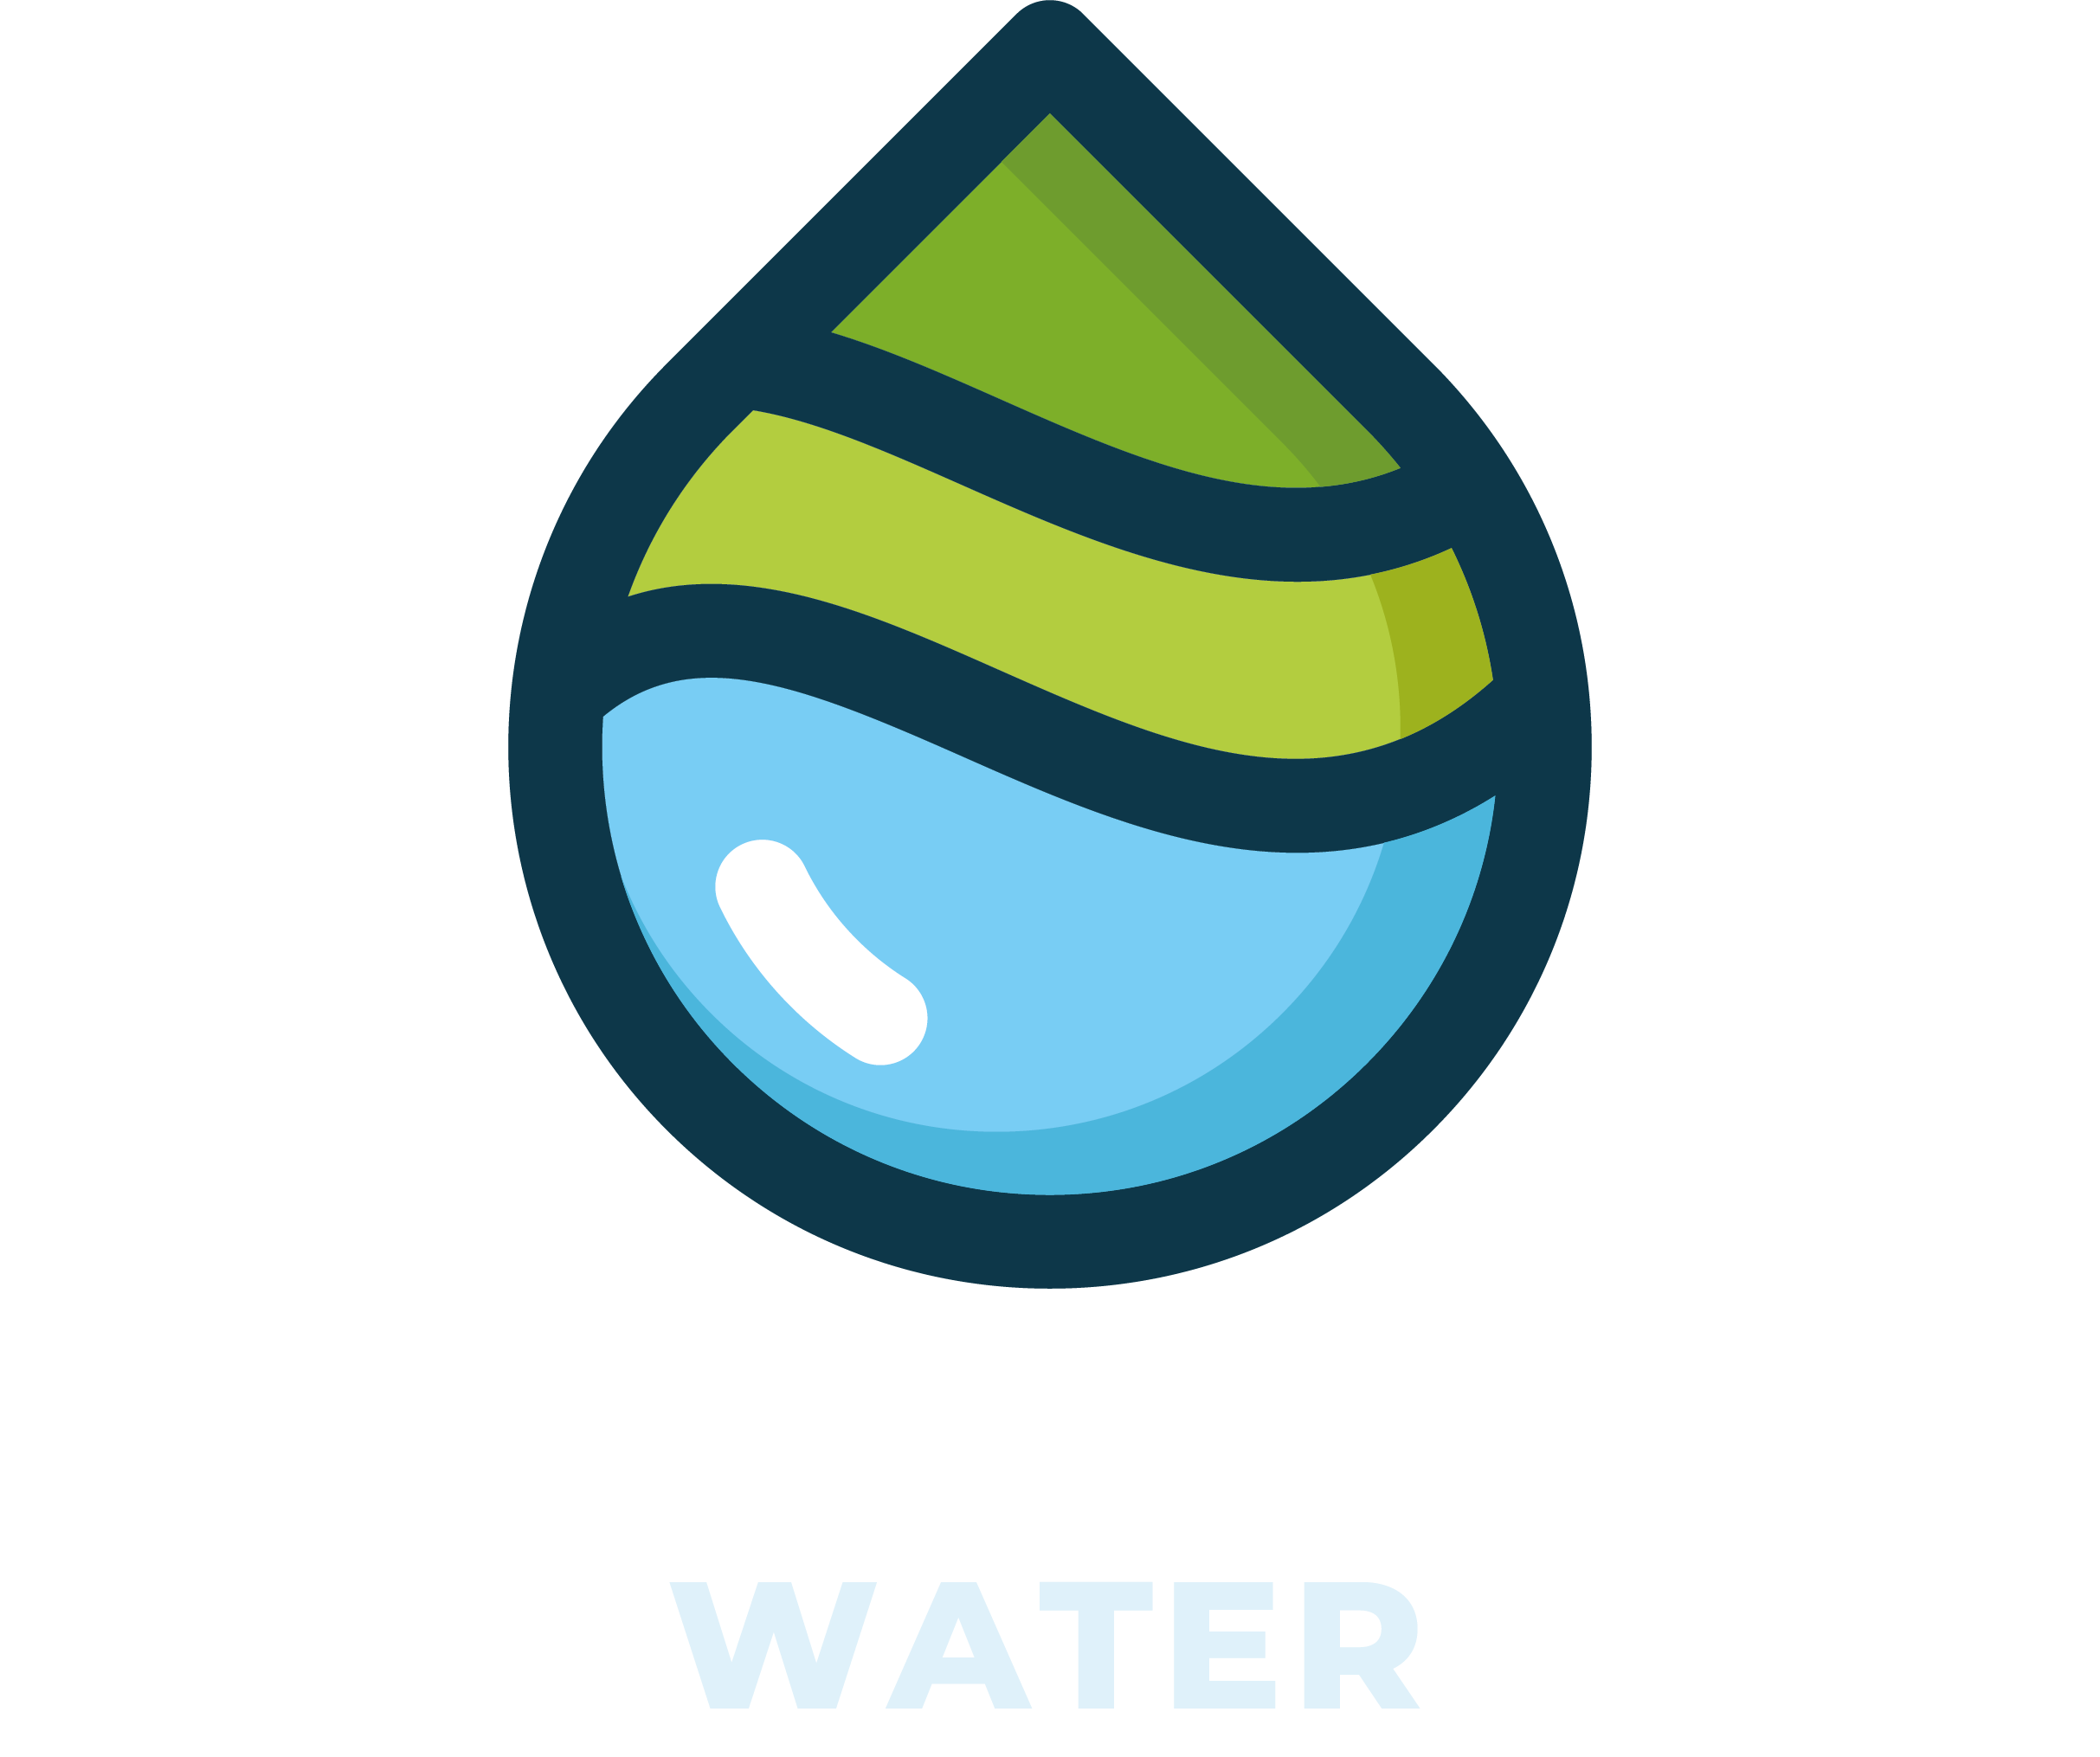 Boistfort Valley Water